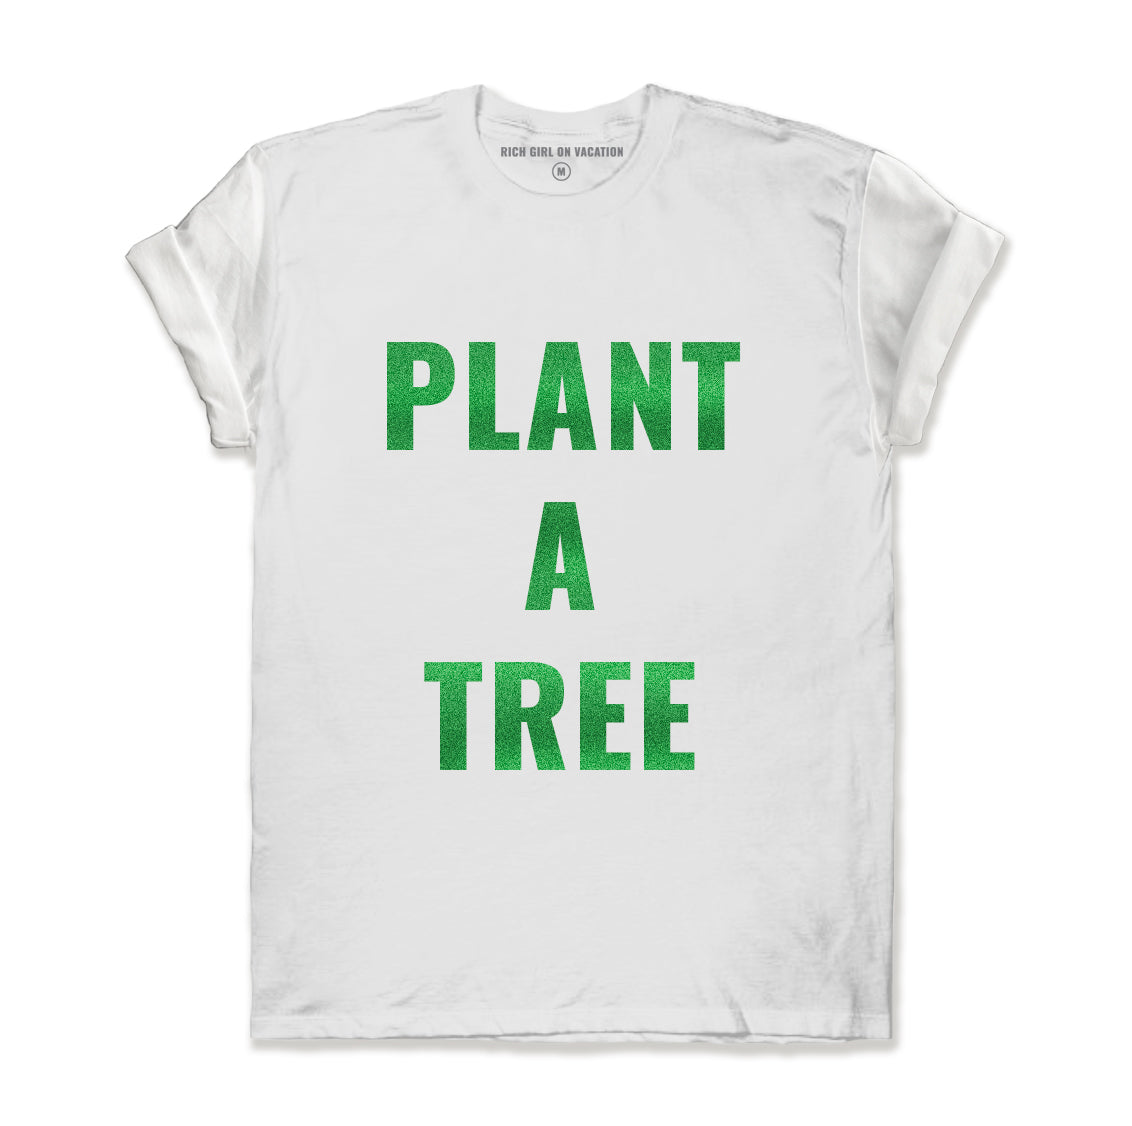 PLANT A TREE